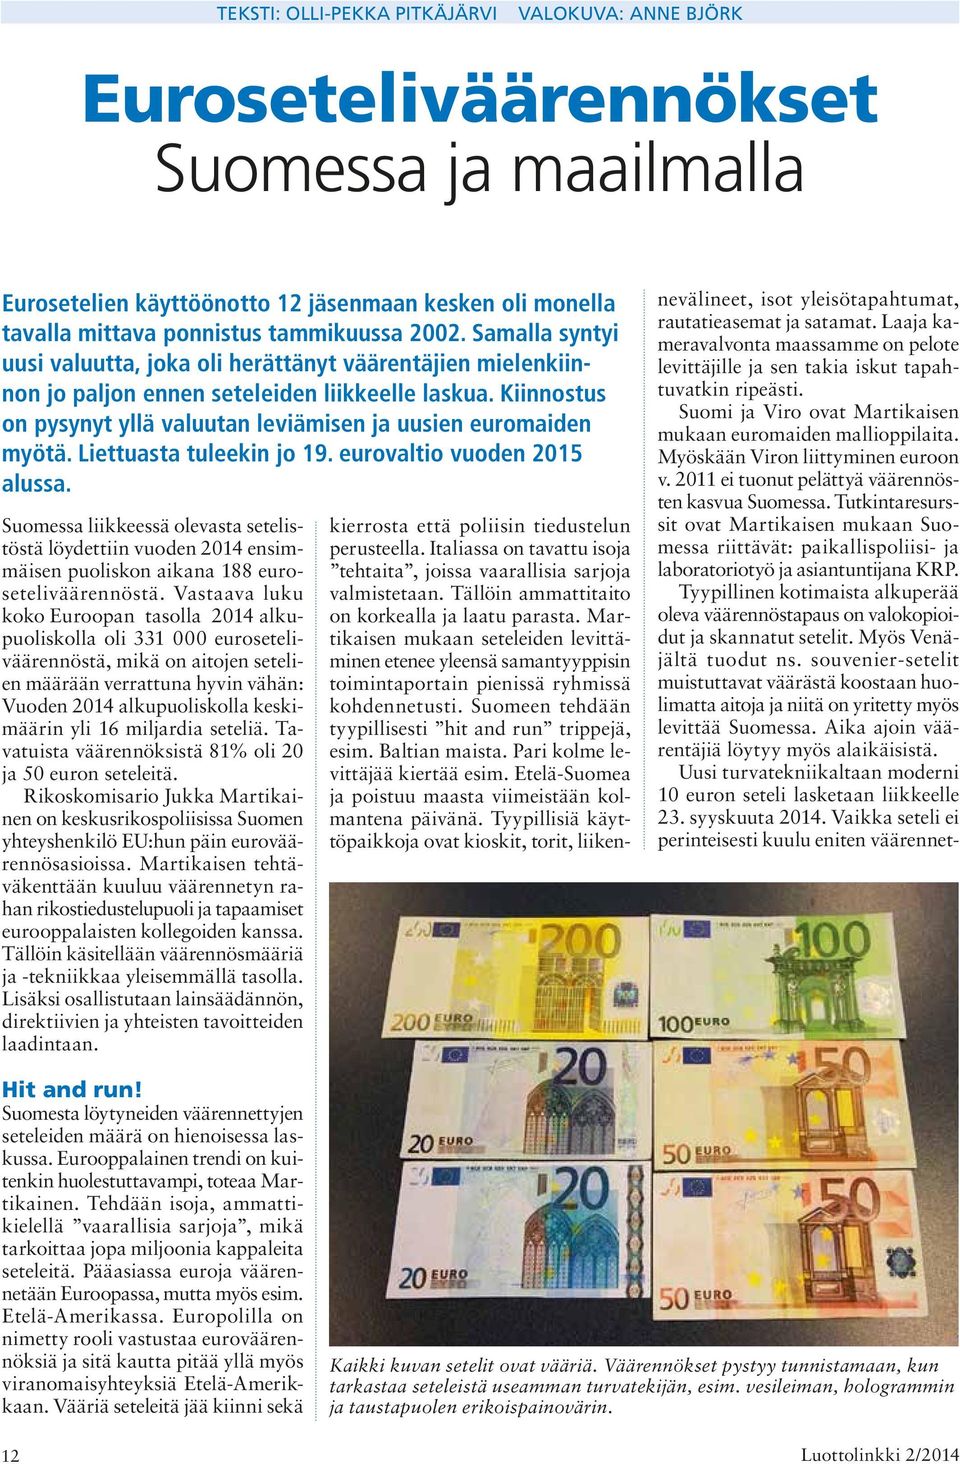 Liettuasta tuleekin jo 19. eurovaltio vuoden 2015 alussa. Suomessa liikkeessä olevasta setelistöstä löydettiin vuoden 2014 ensimmäisen puoliskon aikana 188 euroseteliväärennöstä.